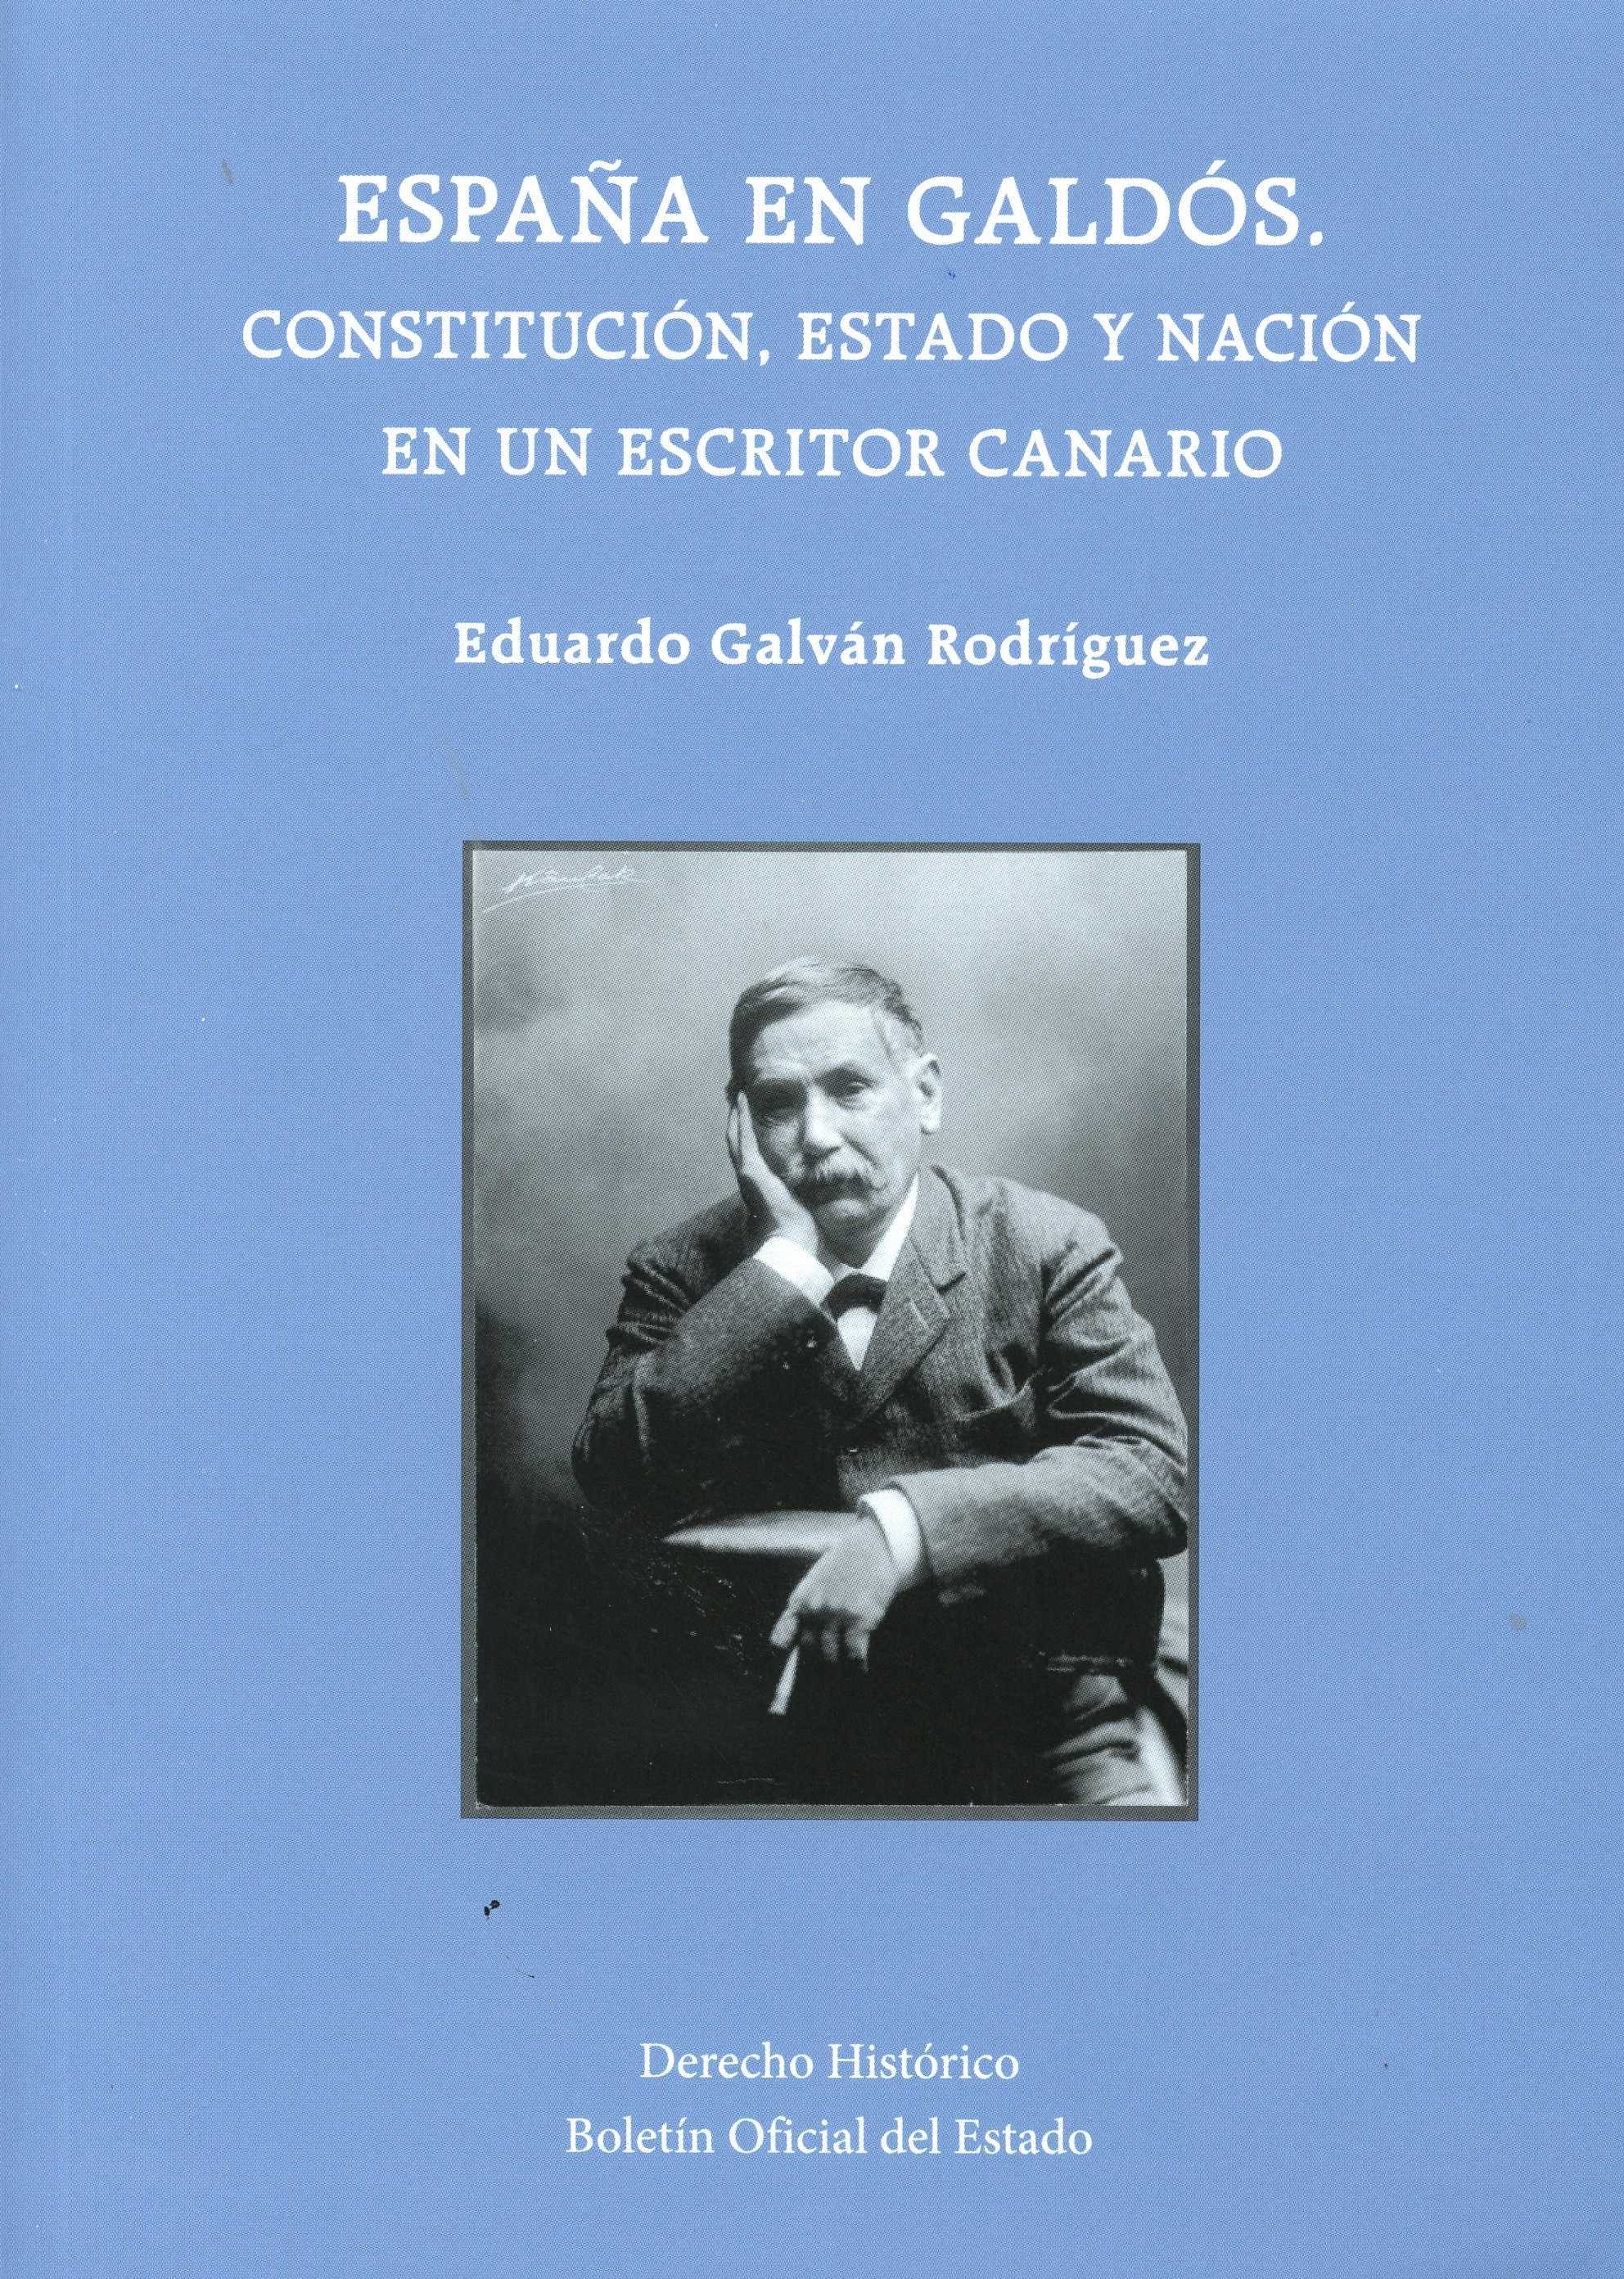 Cubierta del libro de Galván, España en Galdós